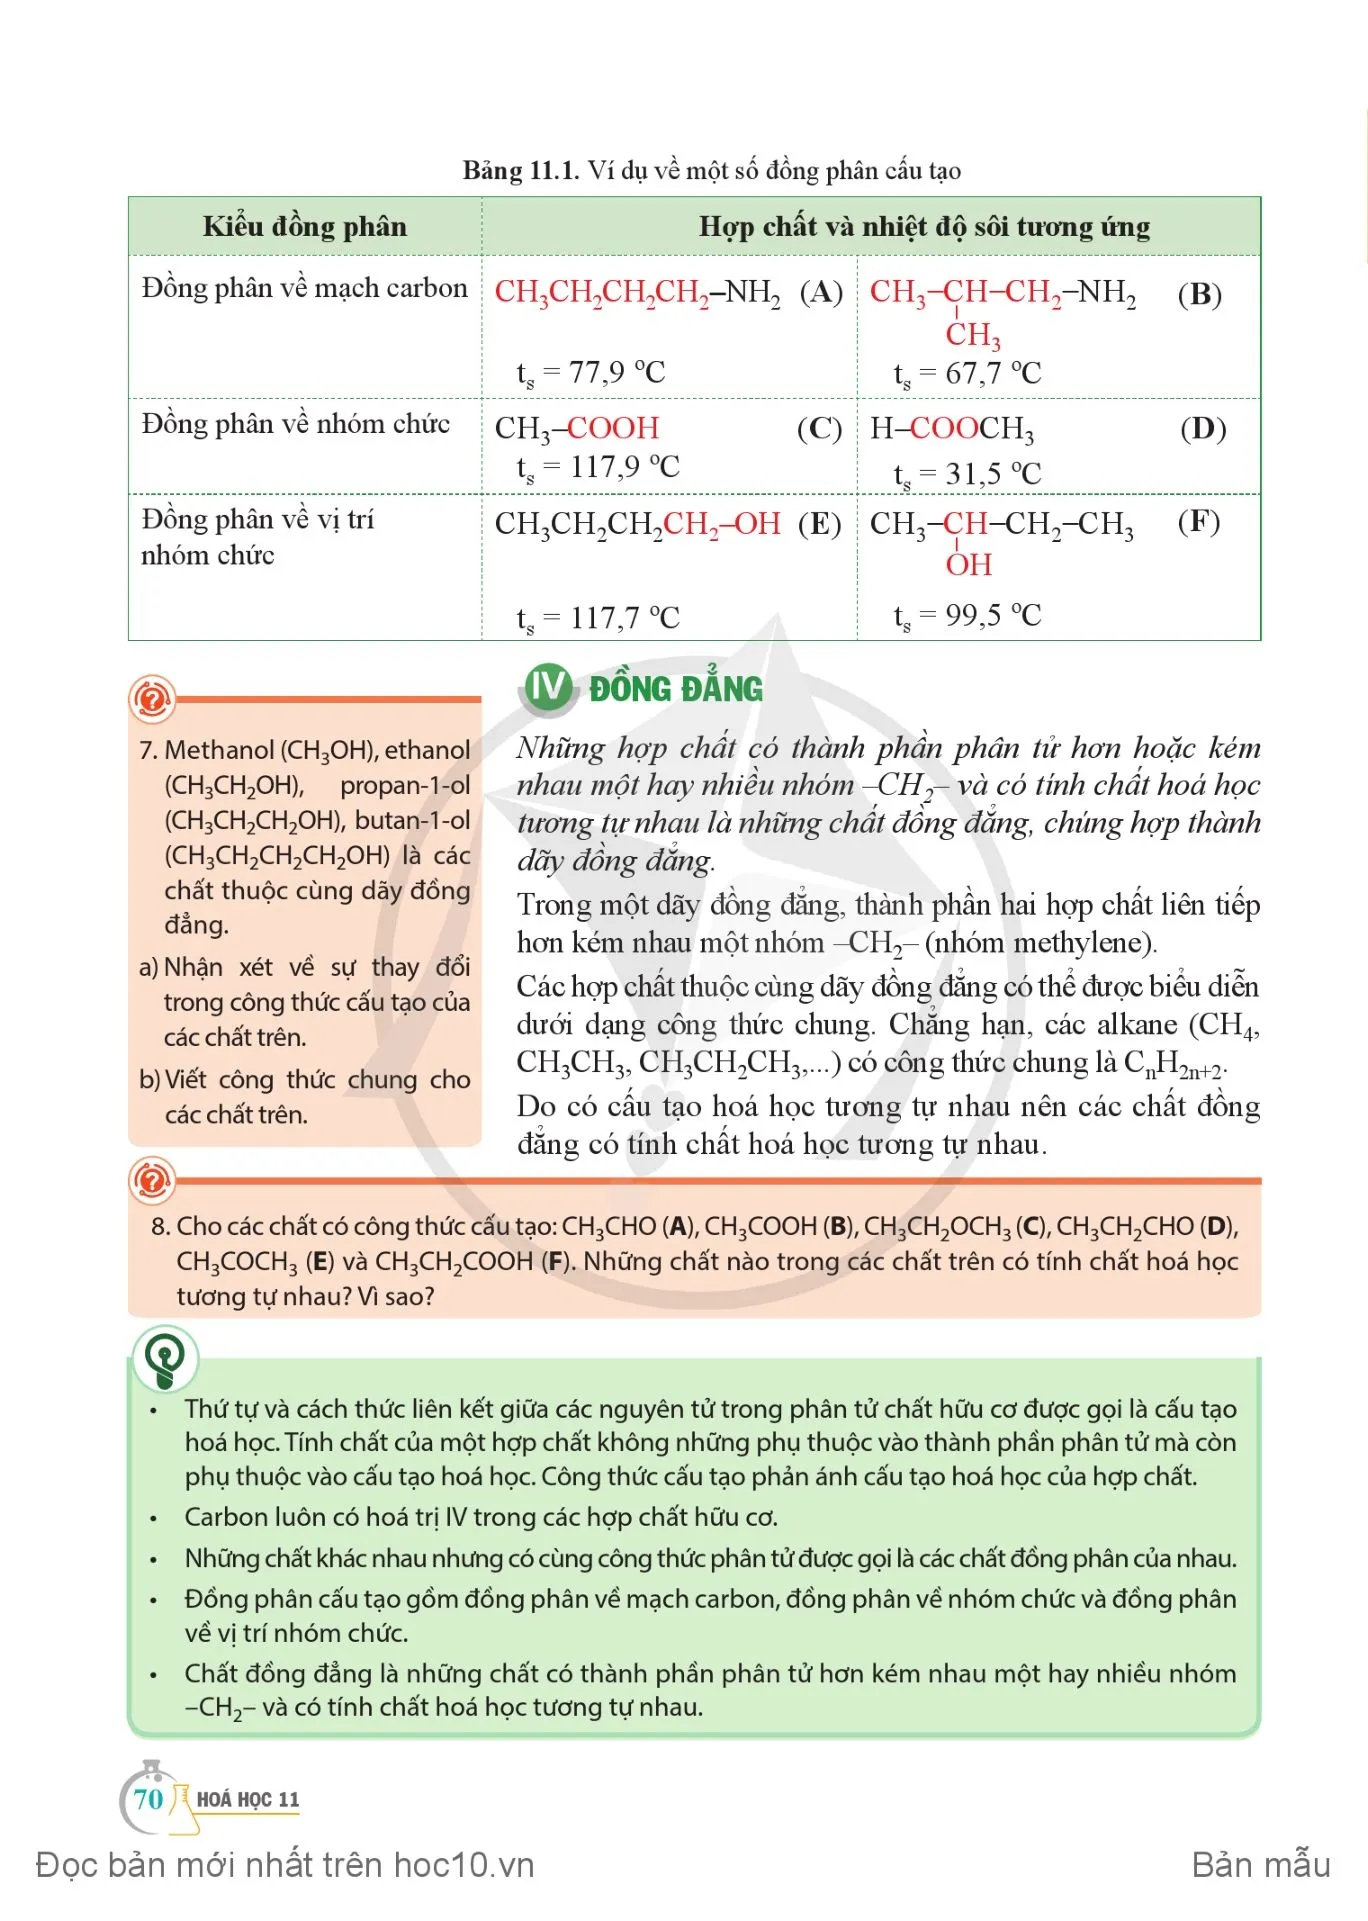 Bài 11. Cấu tạo hoá học của hợp chất hữu cơ.